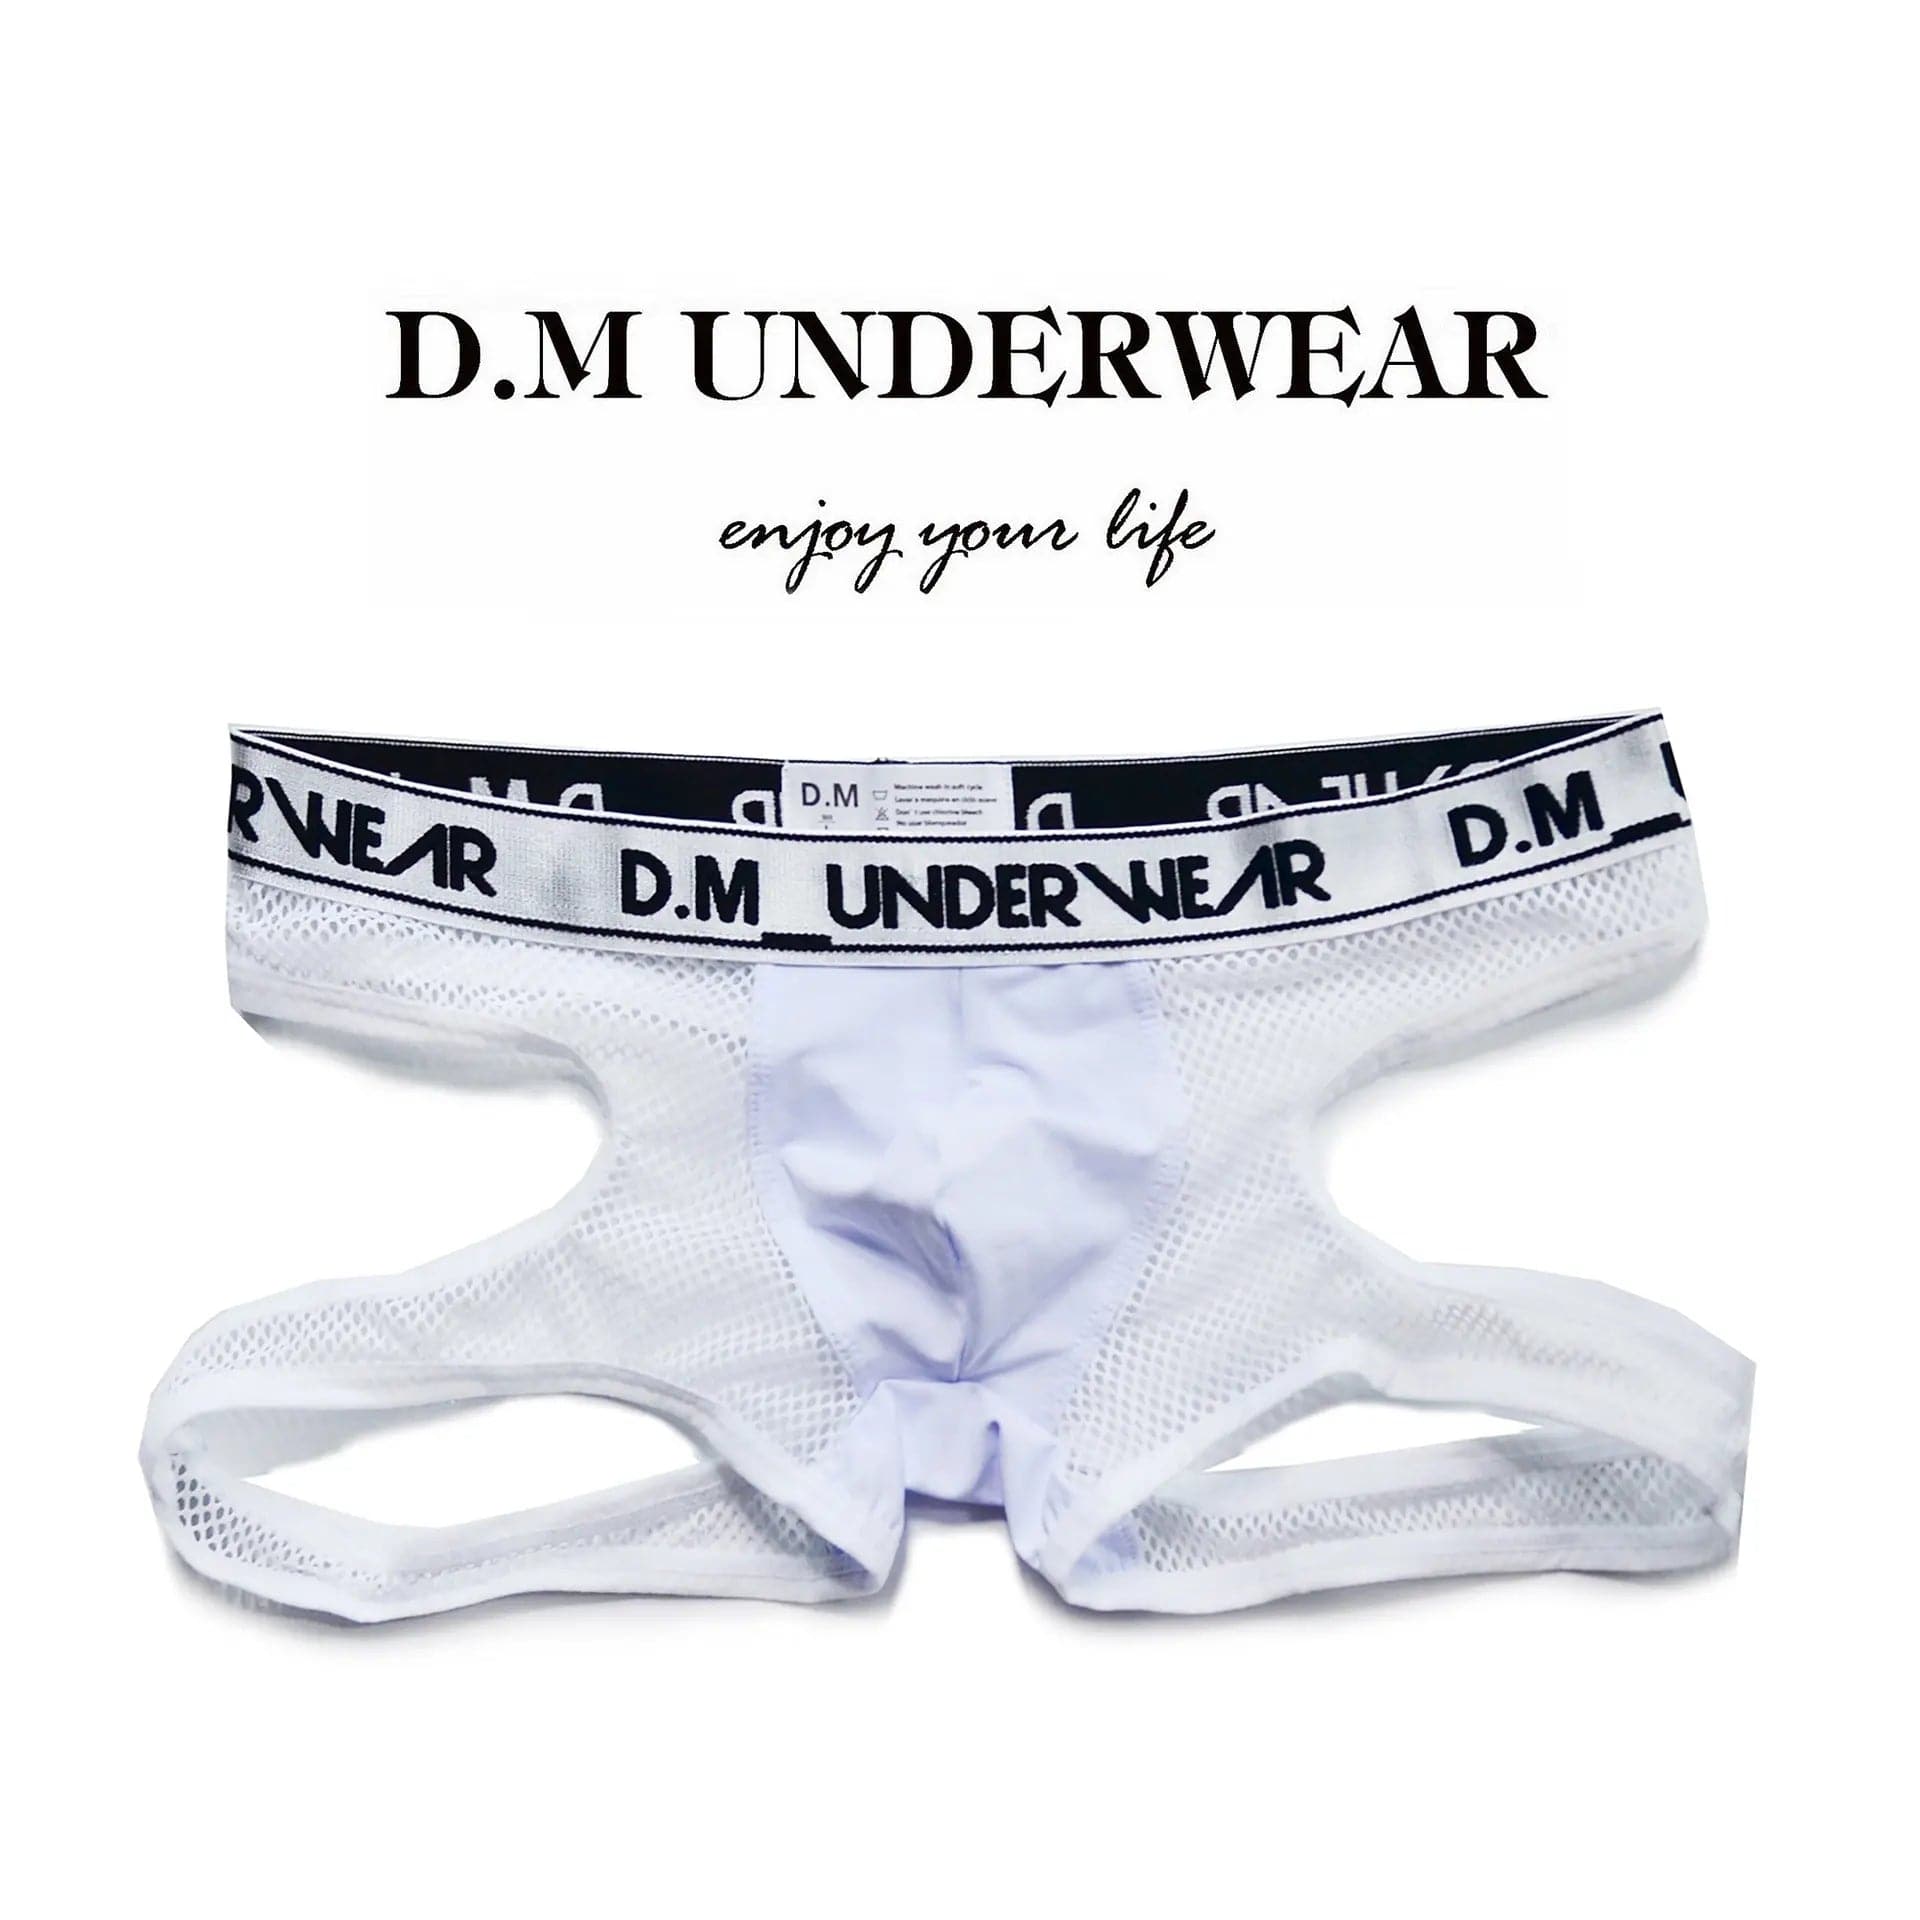 D.M Men's Underwear Sexy Mesh T-Back D.M UNDERWEAR